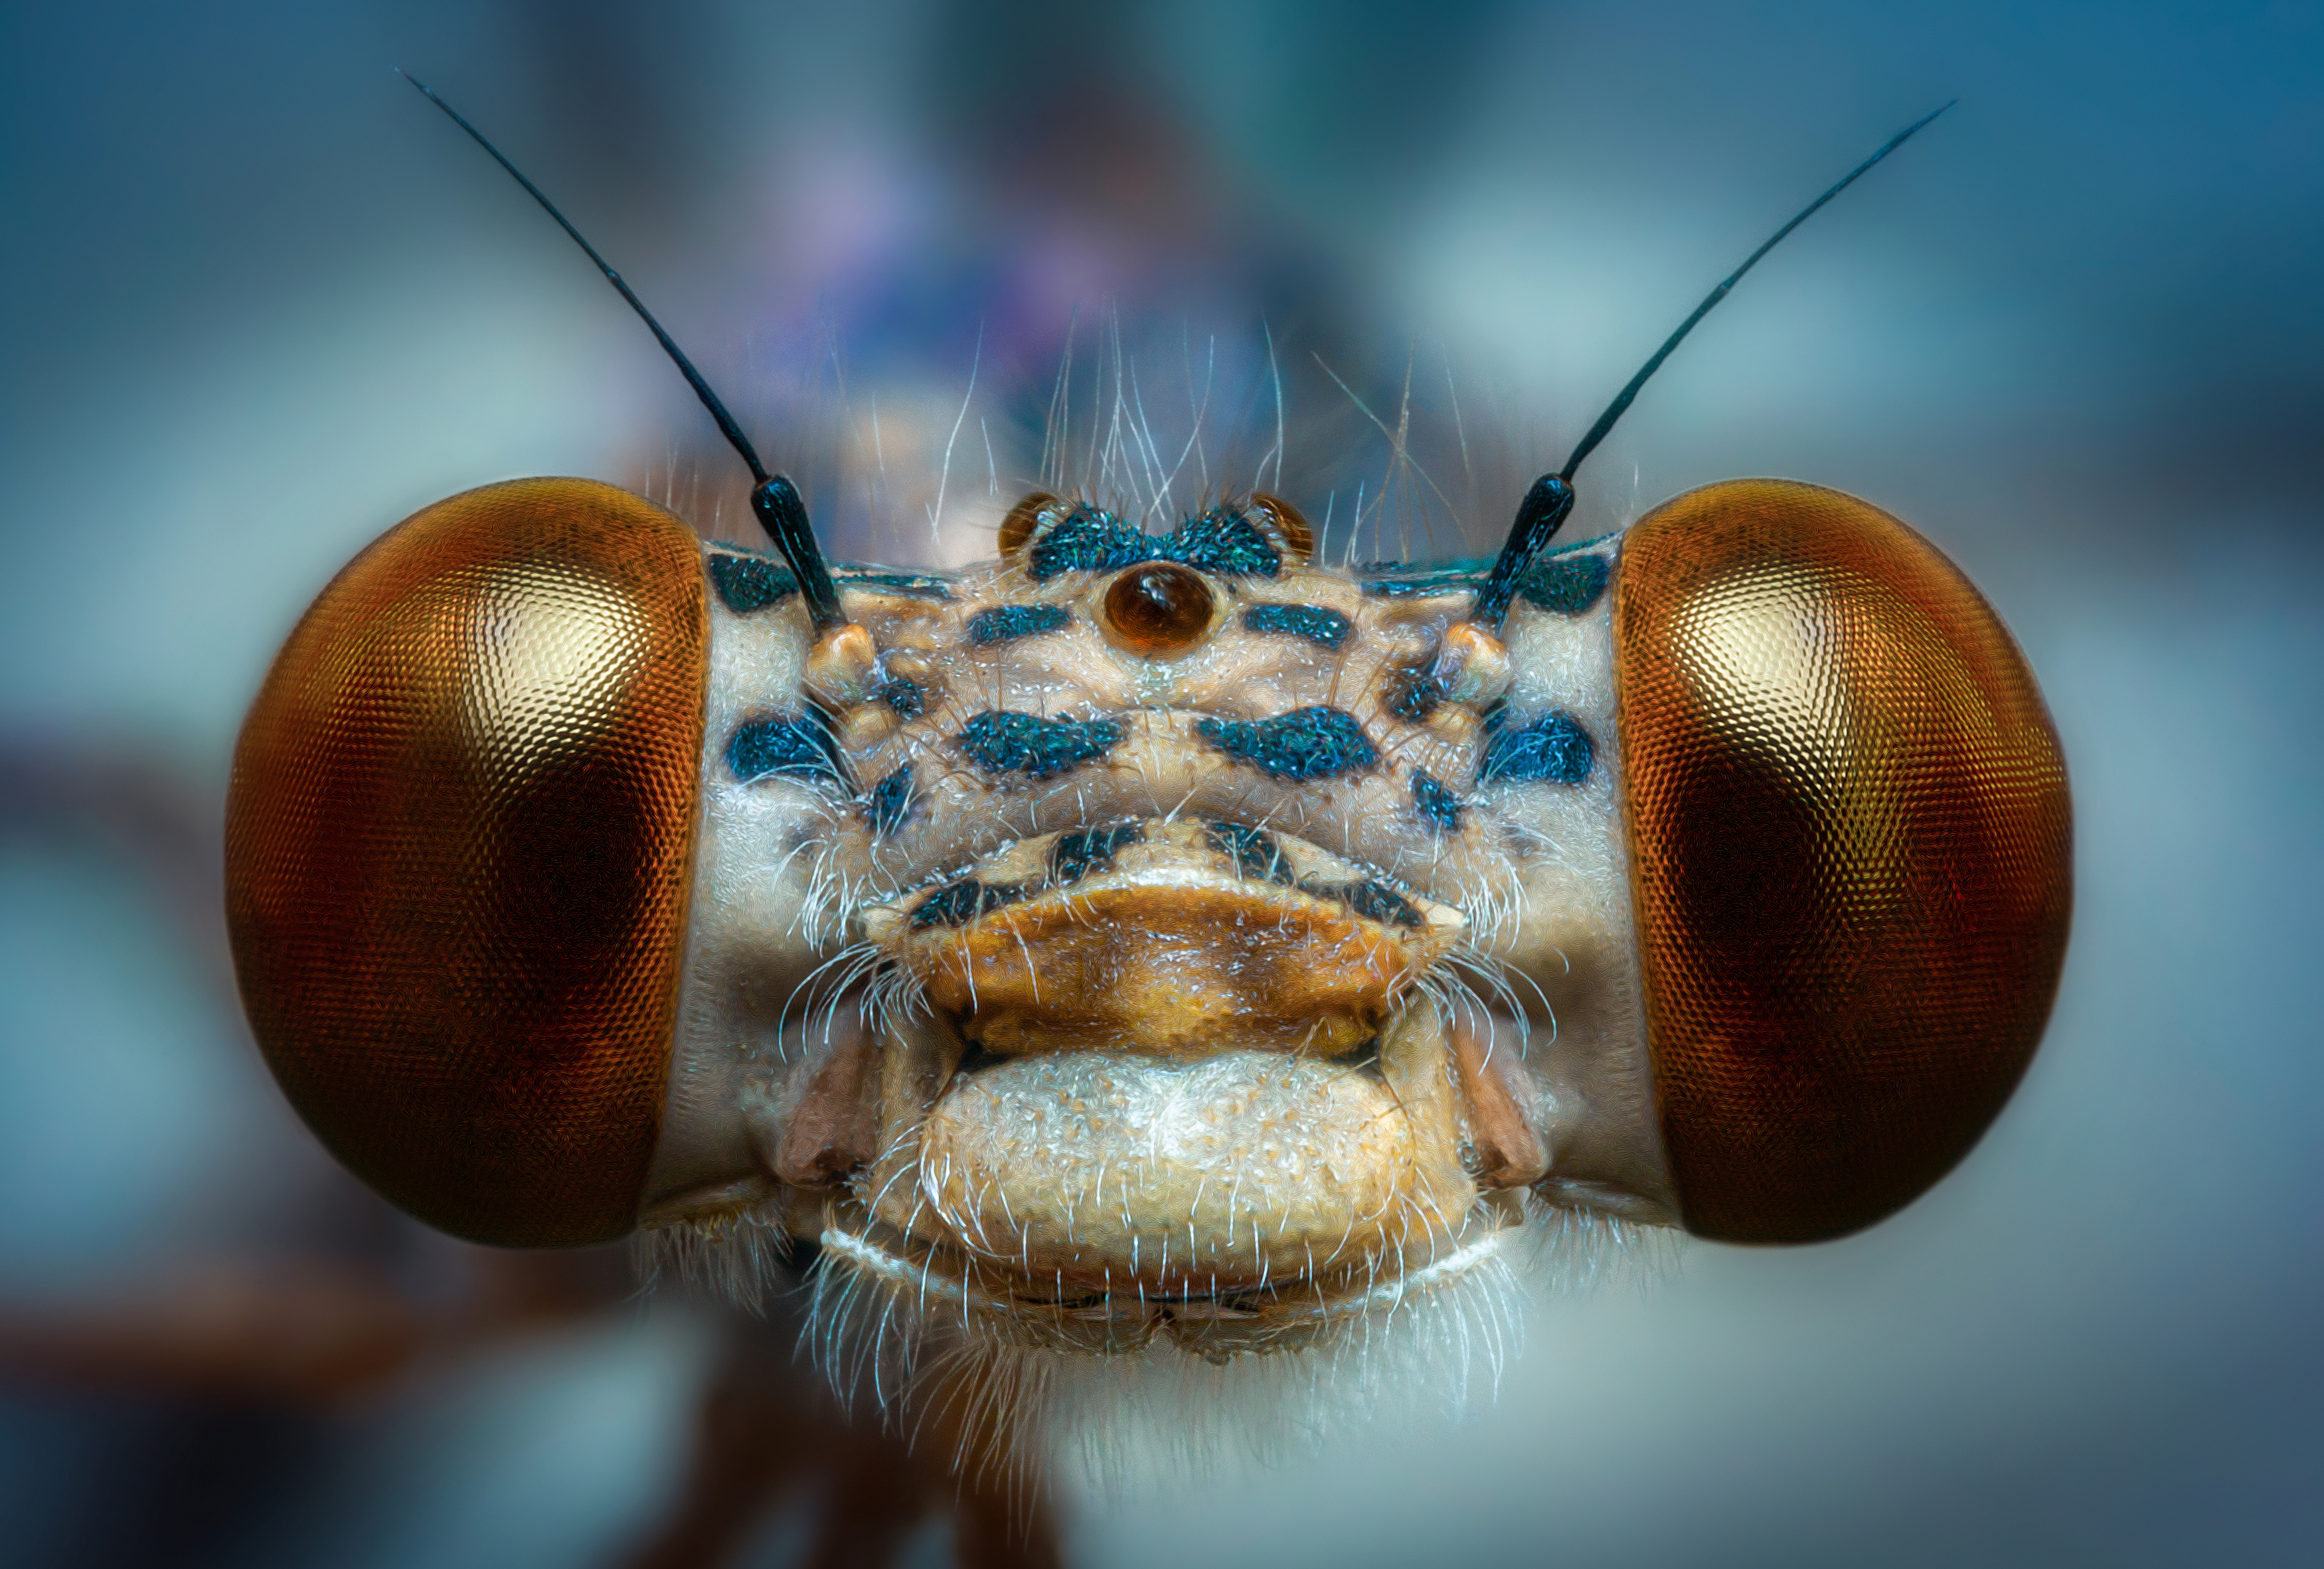 стрекоза насекомое портрет глаза взгляд улыбка фон боке свет цвет макро фотография, Еремеев Дмитрий